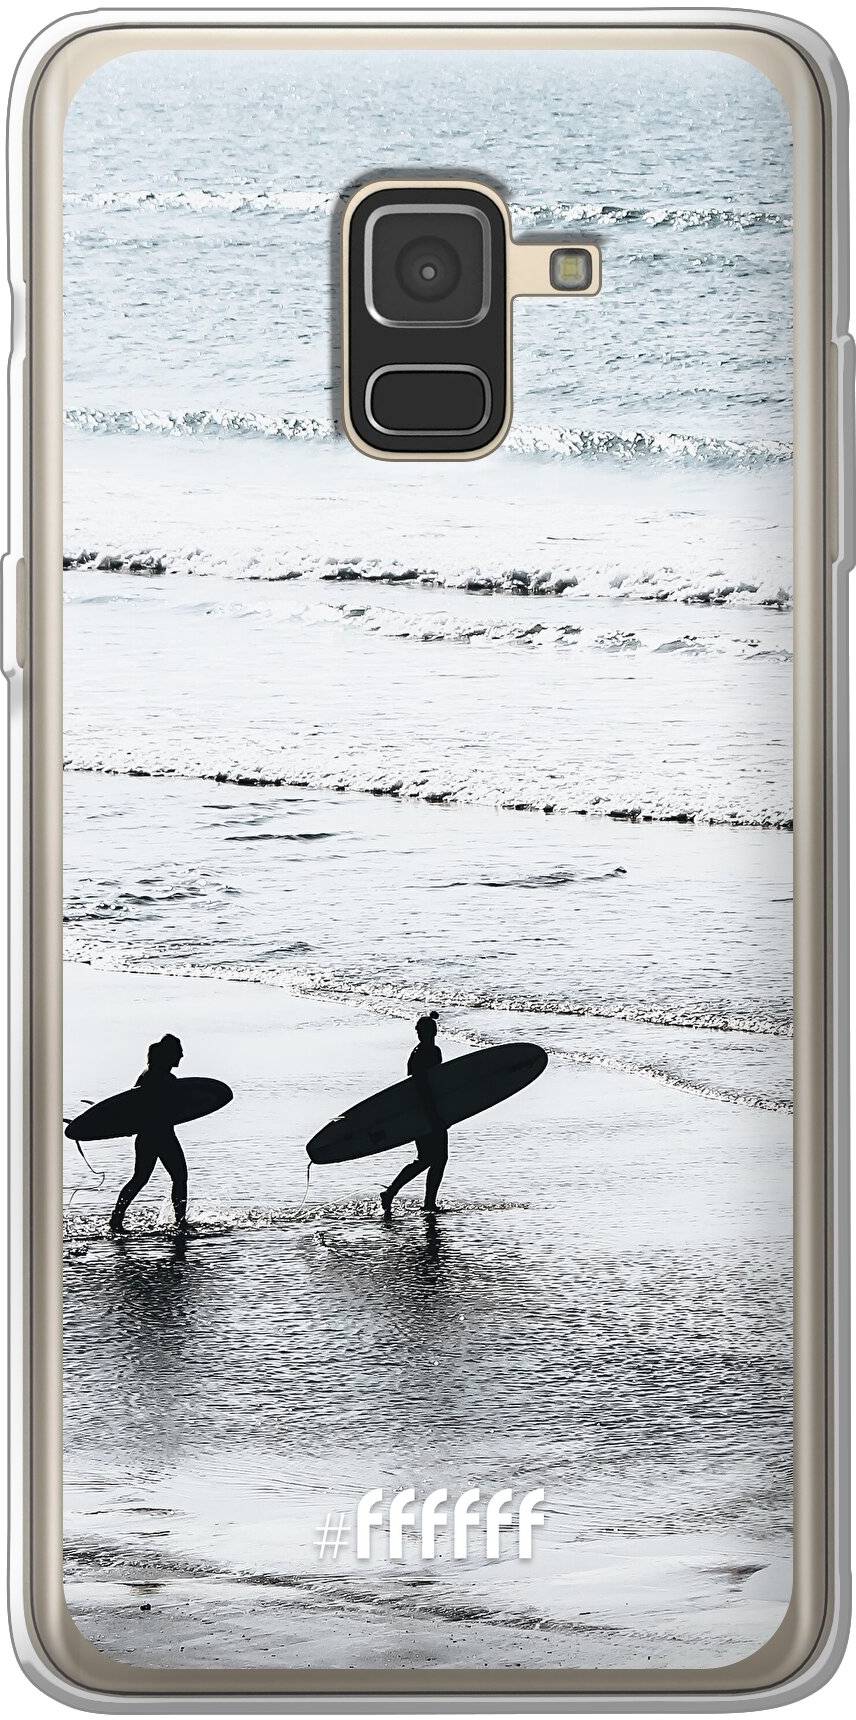 Surfing Galaxy A8 (2018)